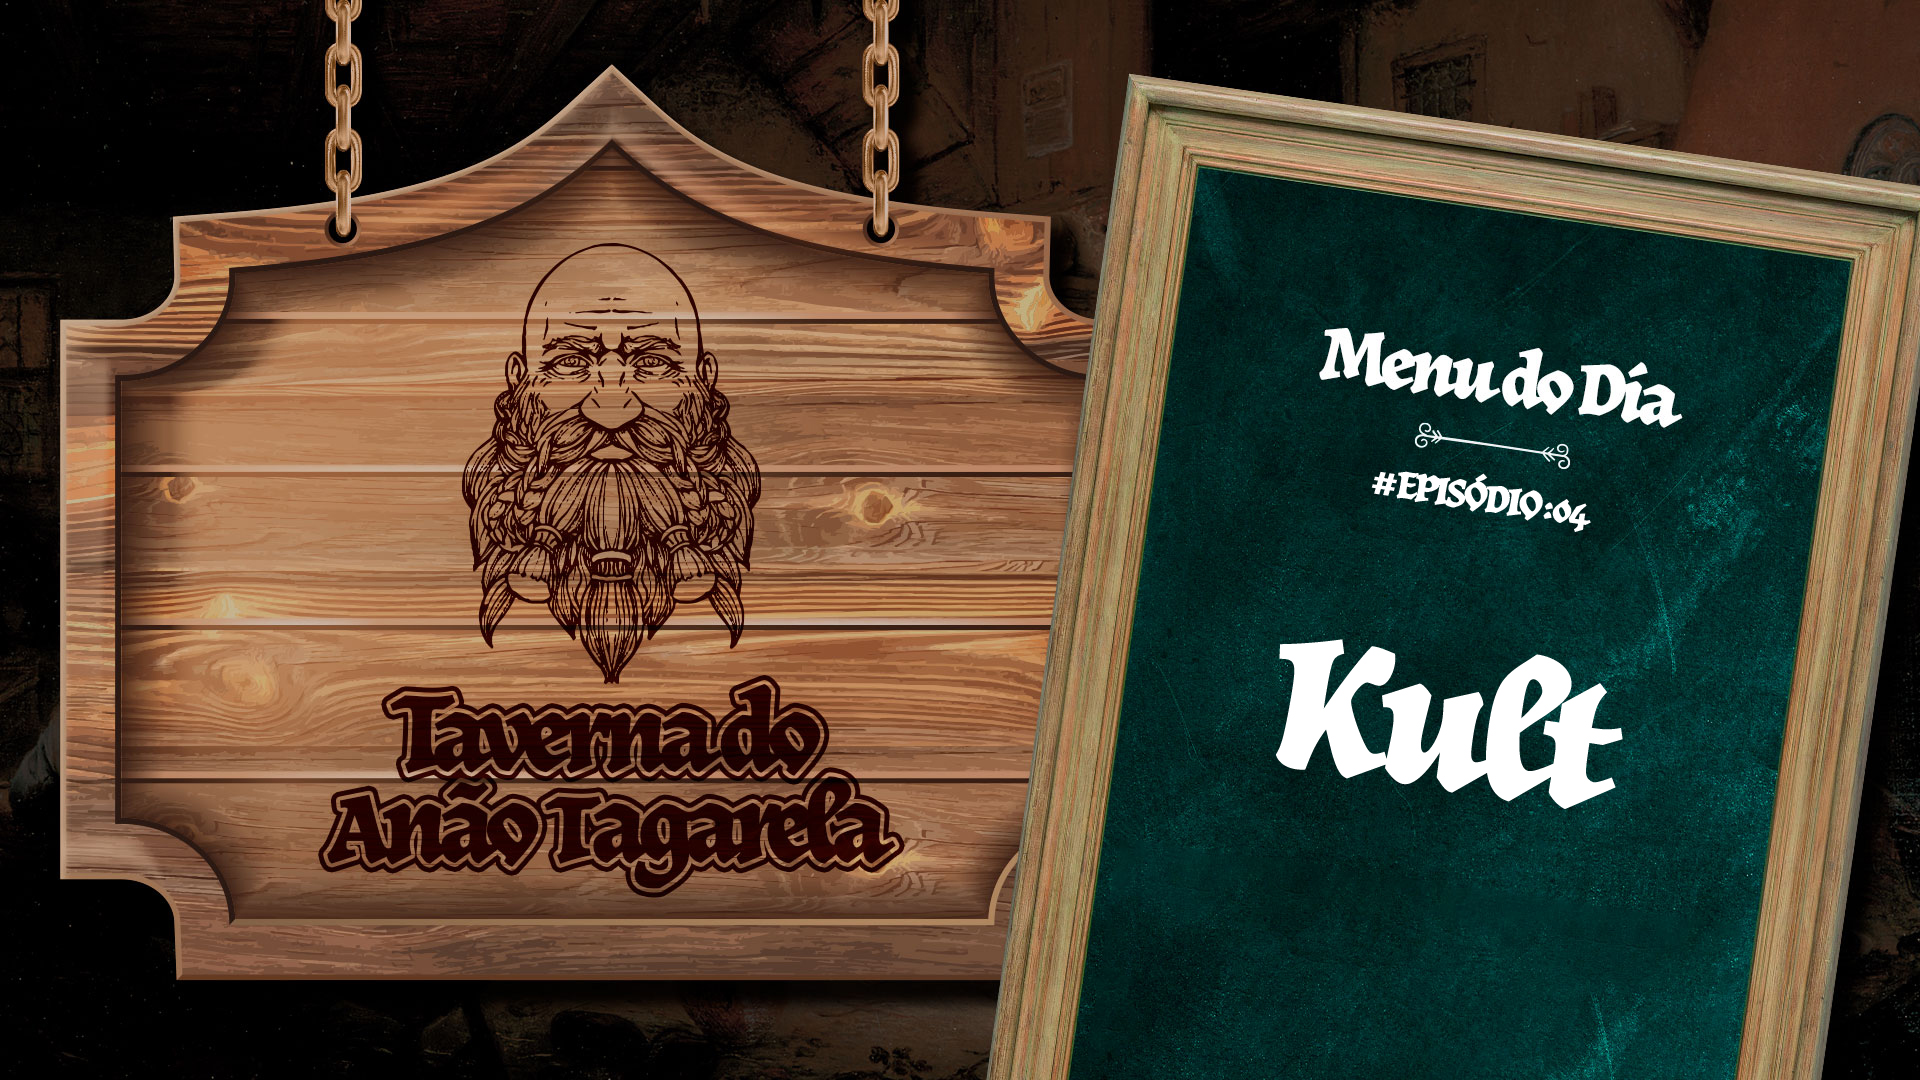 Kult - Taverna do Anão Tagarela